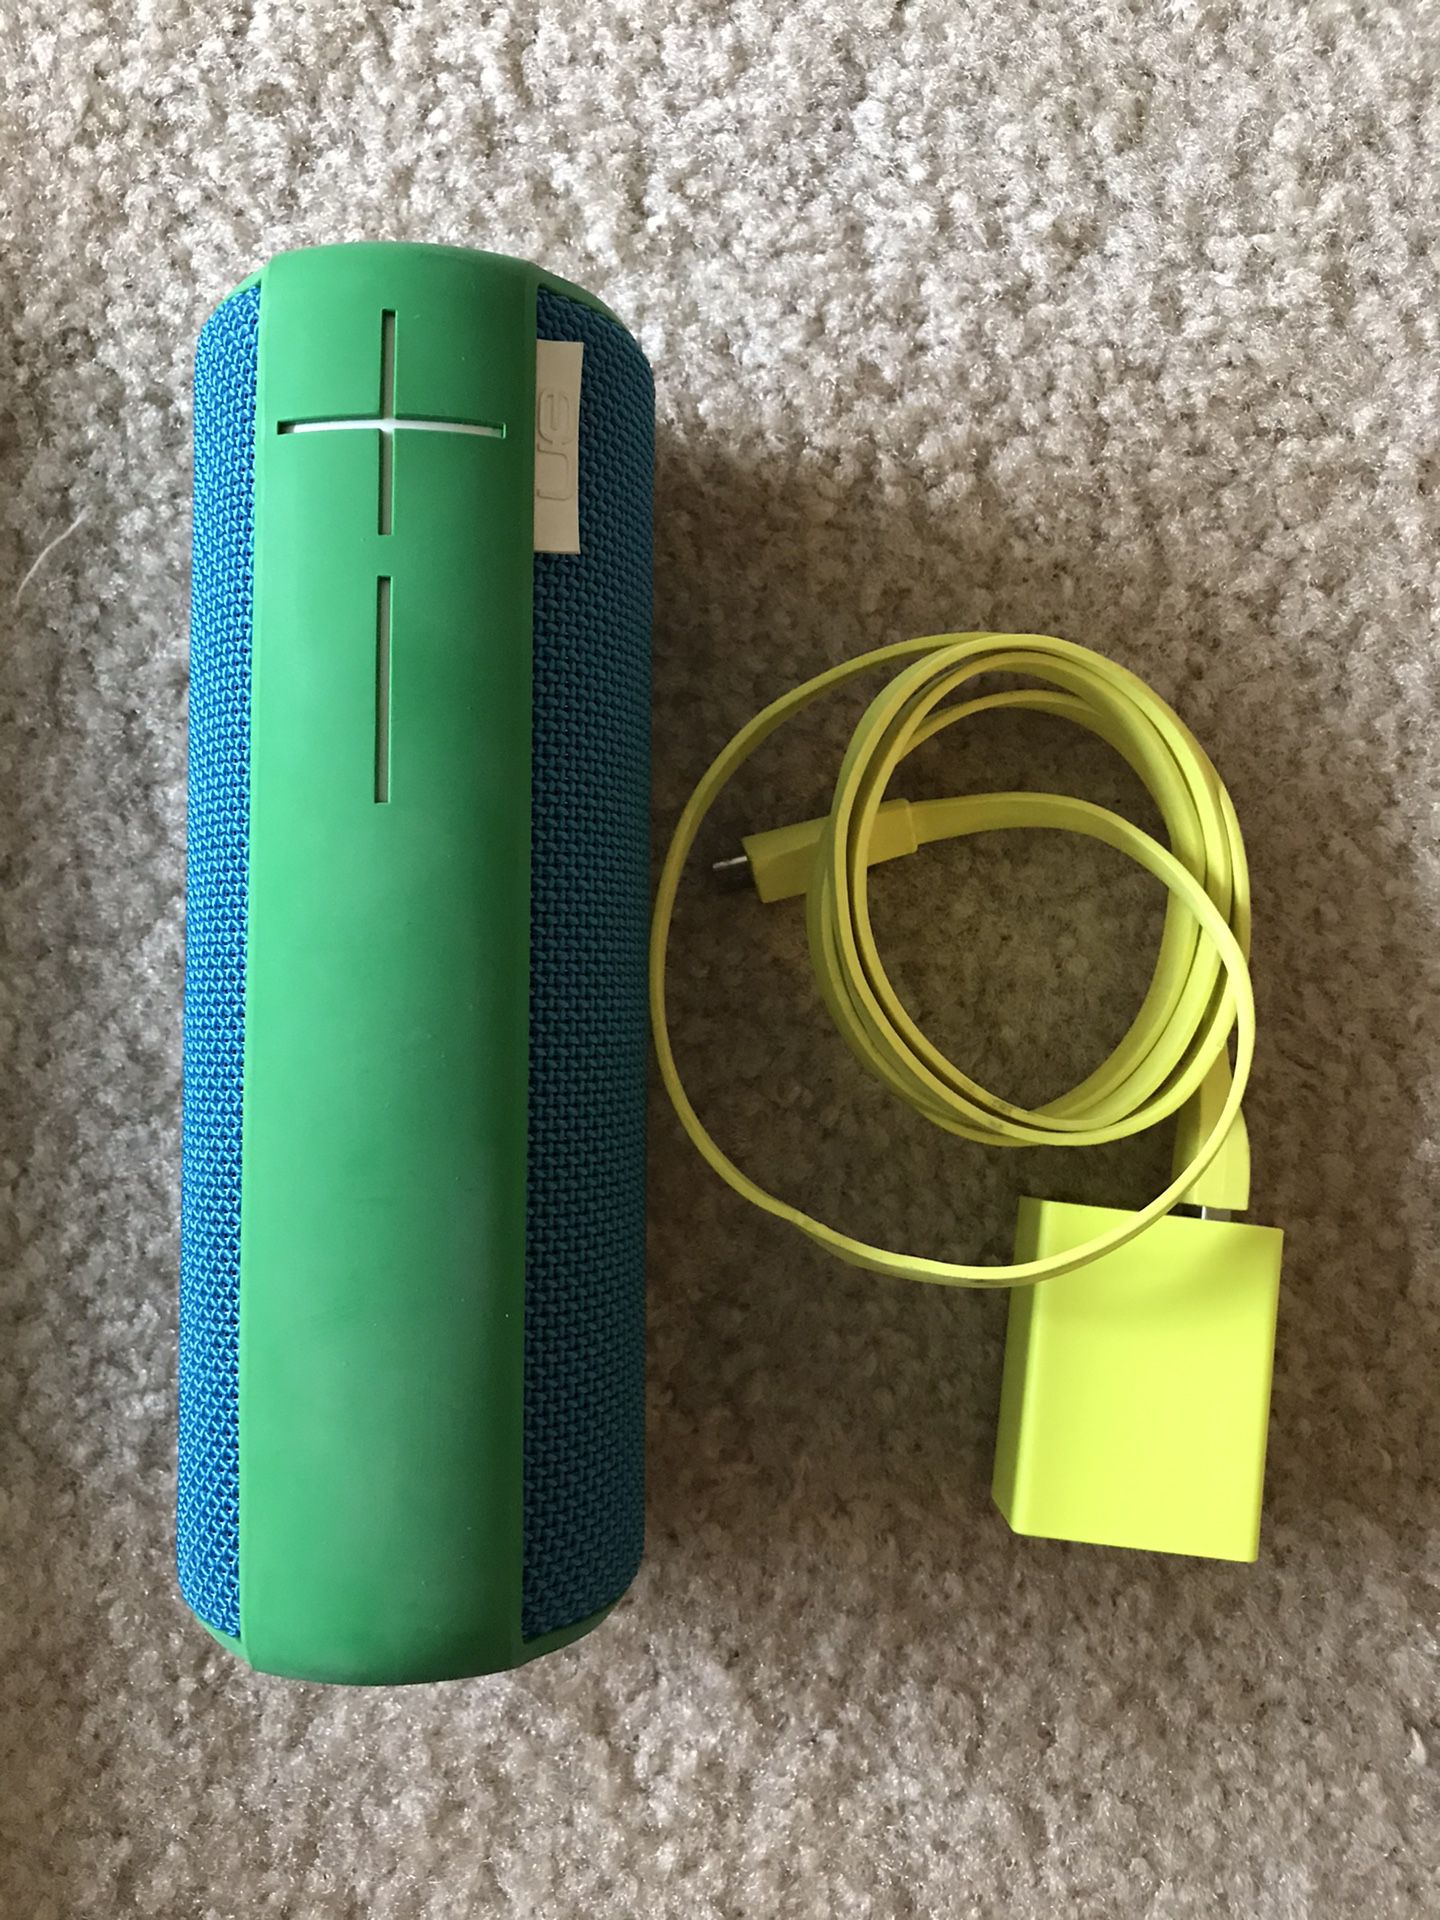 UE (Ultimate Ears) Boom Wireless Speaker - Blue/Green